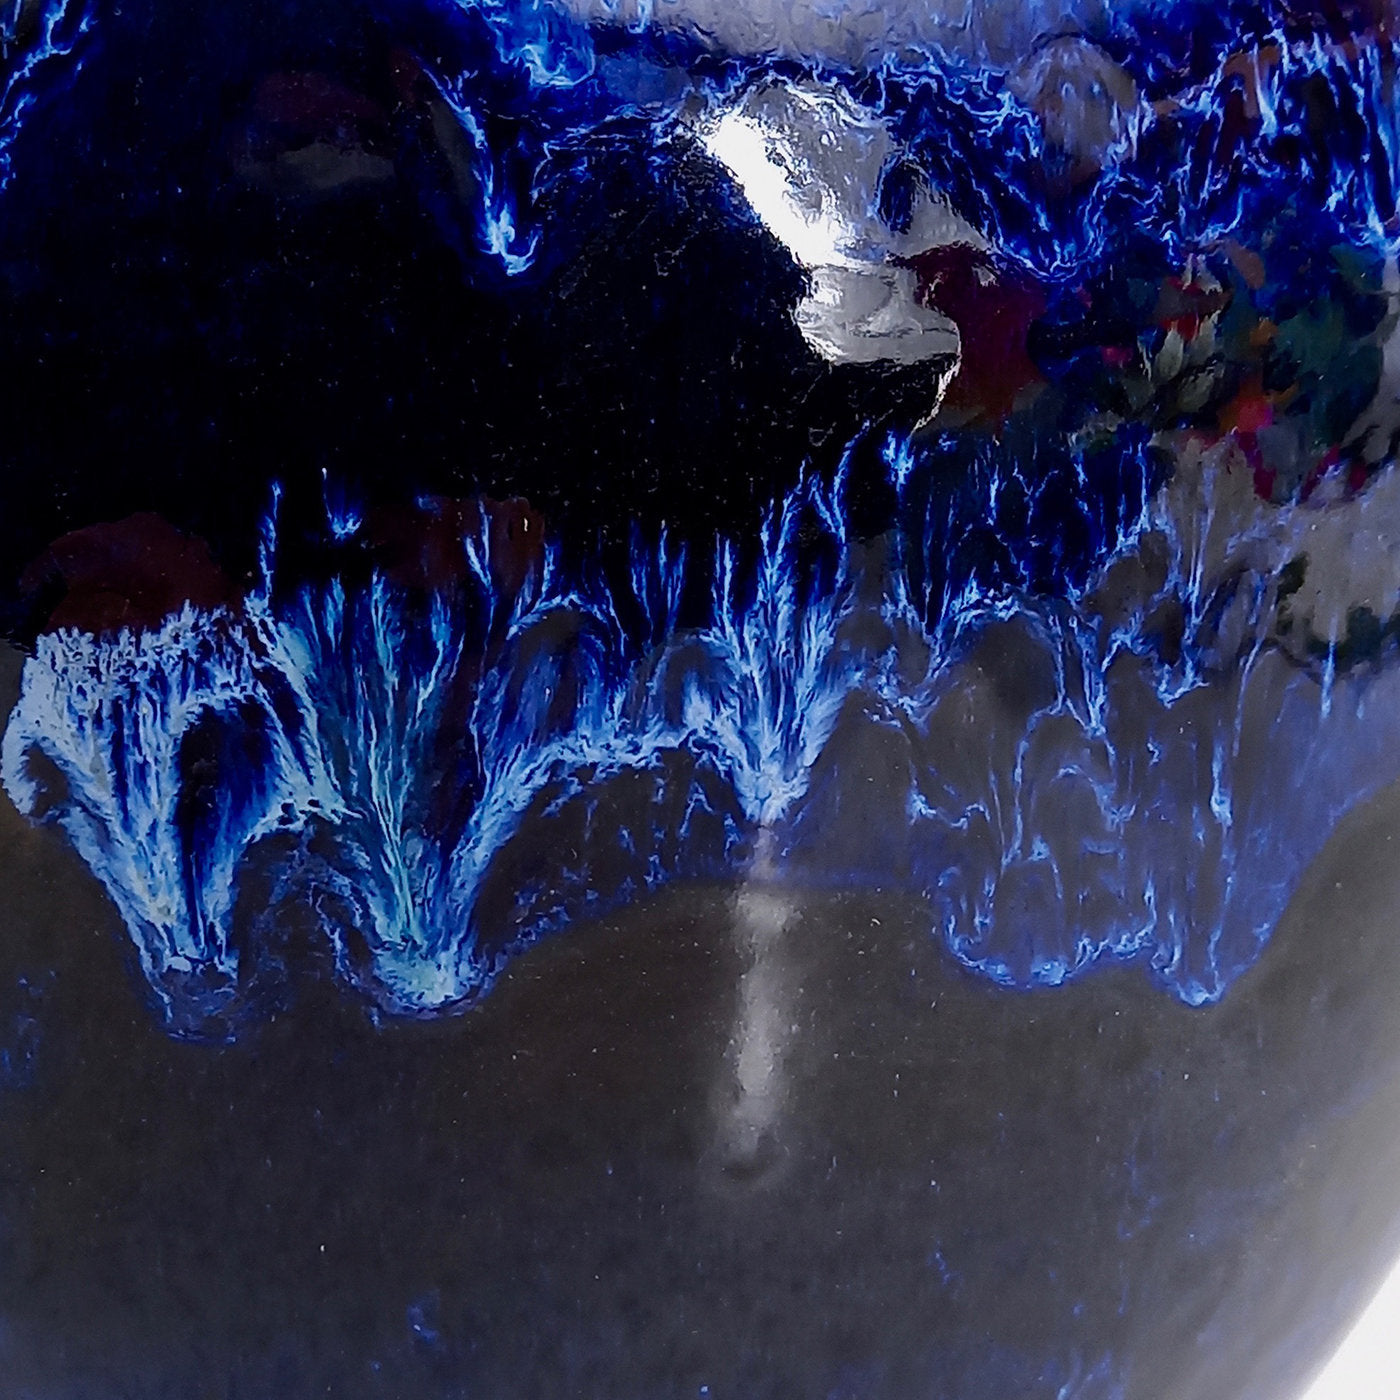 Black 'n' Blue Vase - Alternative view 1